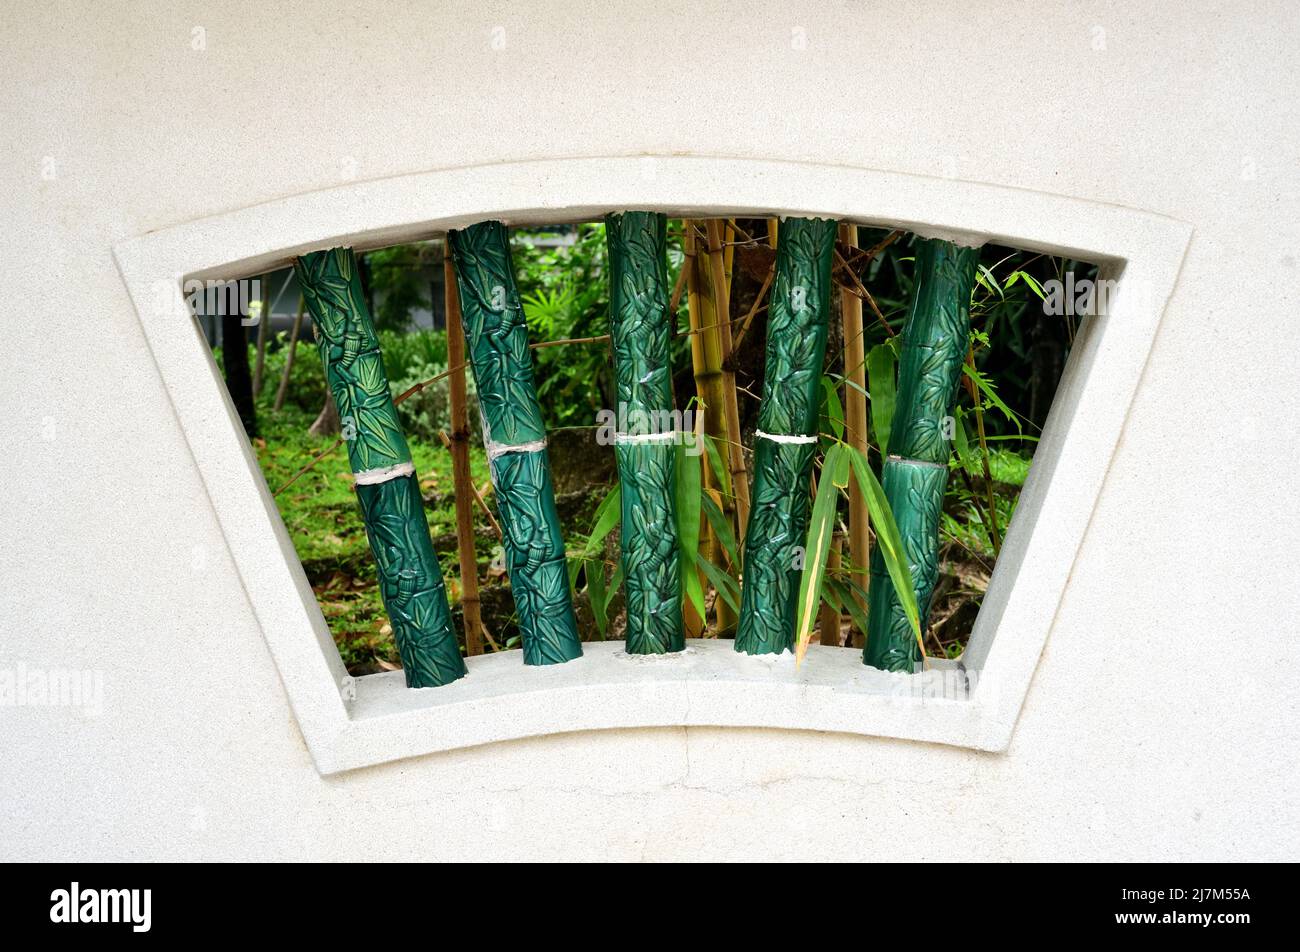 Fenêtre en forme de ventilateur de style chinois traditionnel d'un parc urbain à Hong Kong Banque D'Images